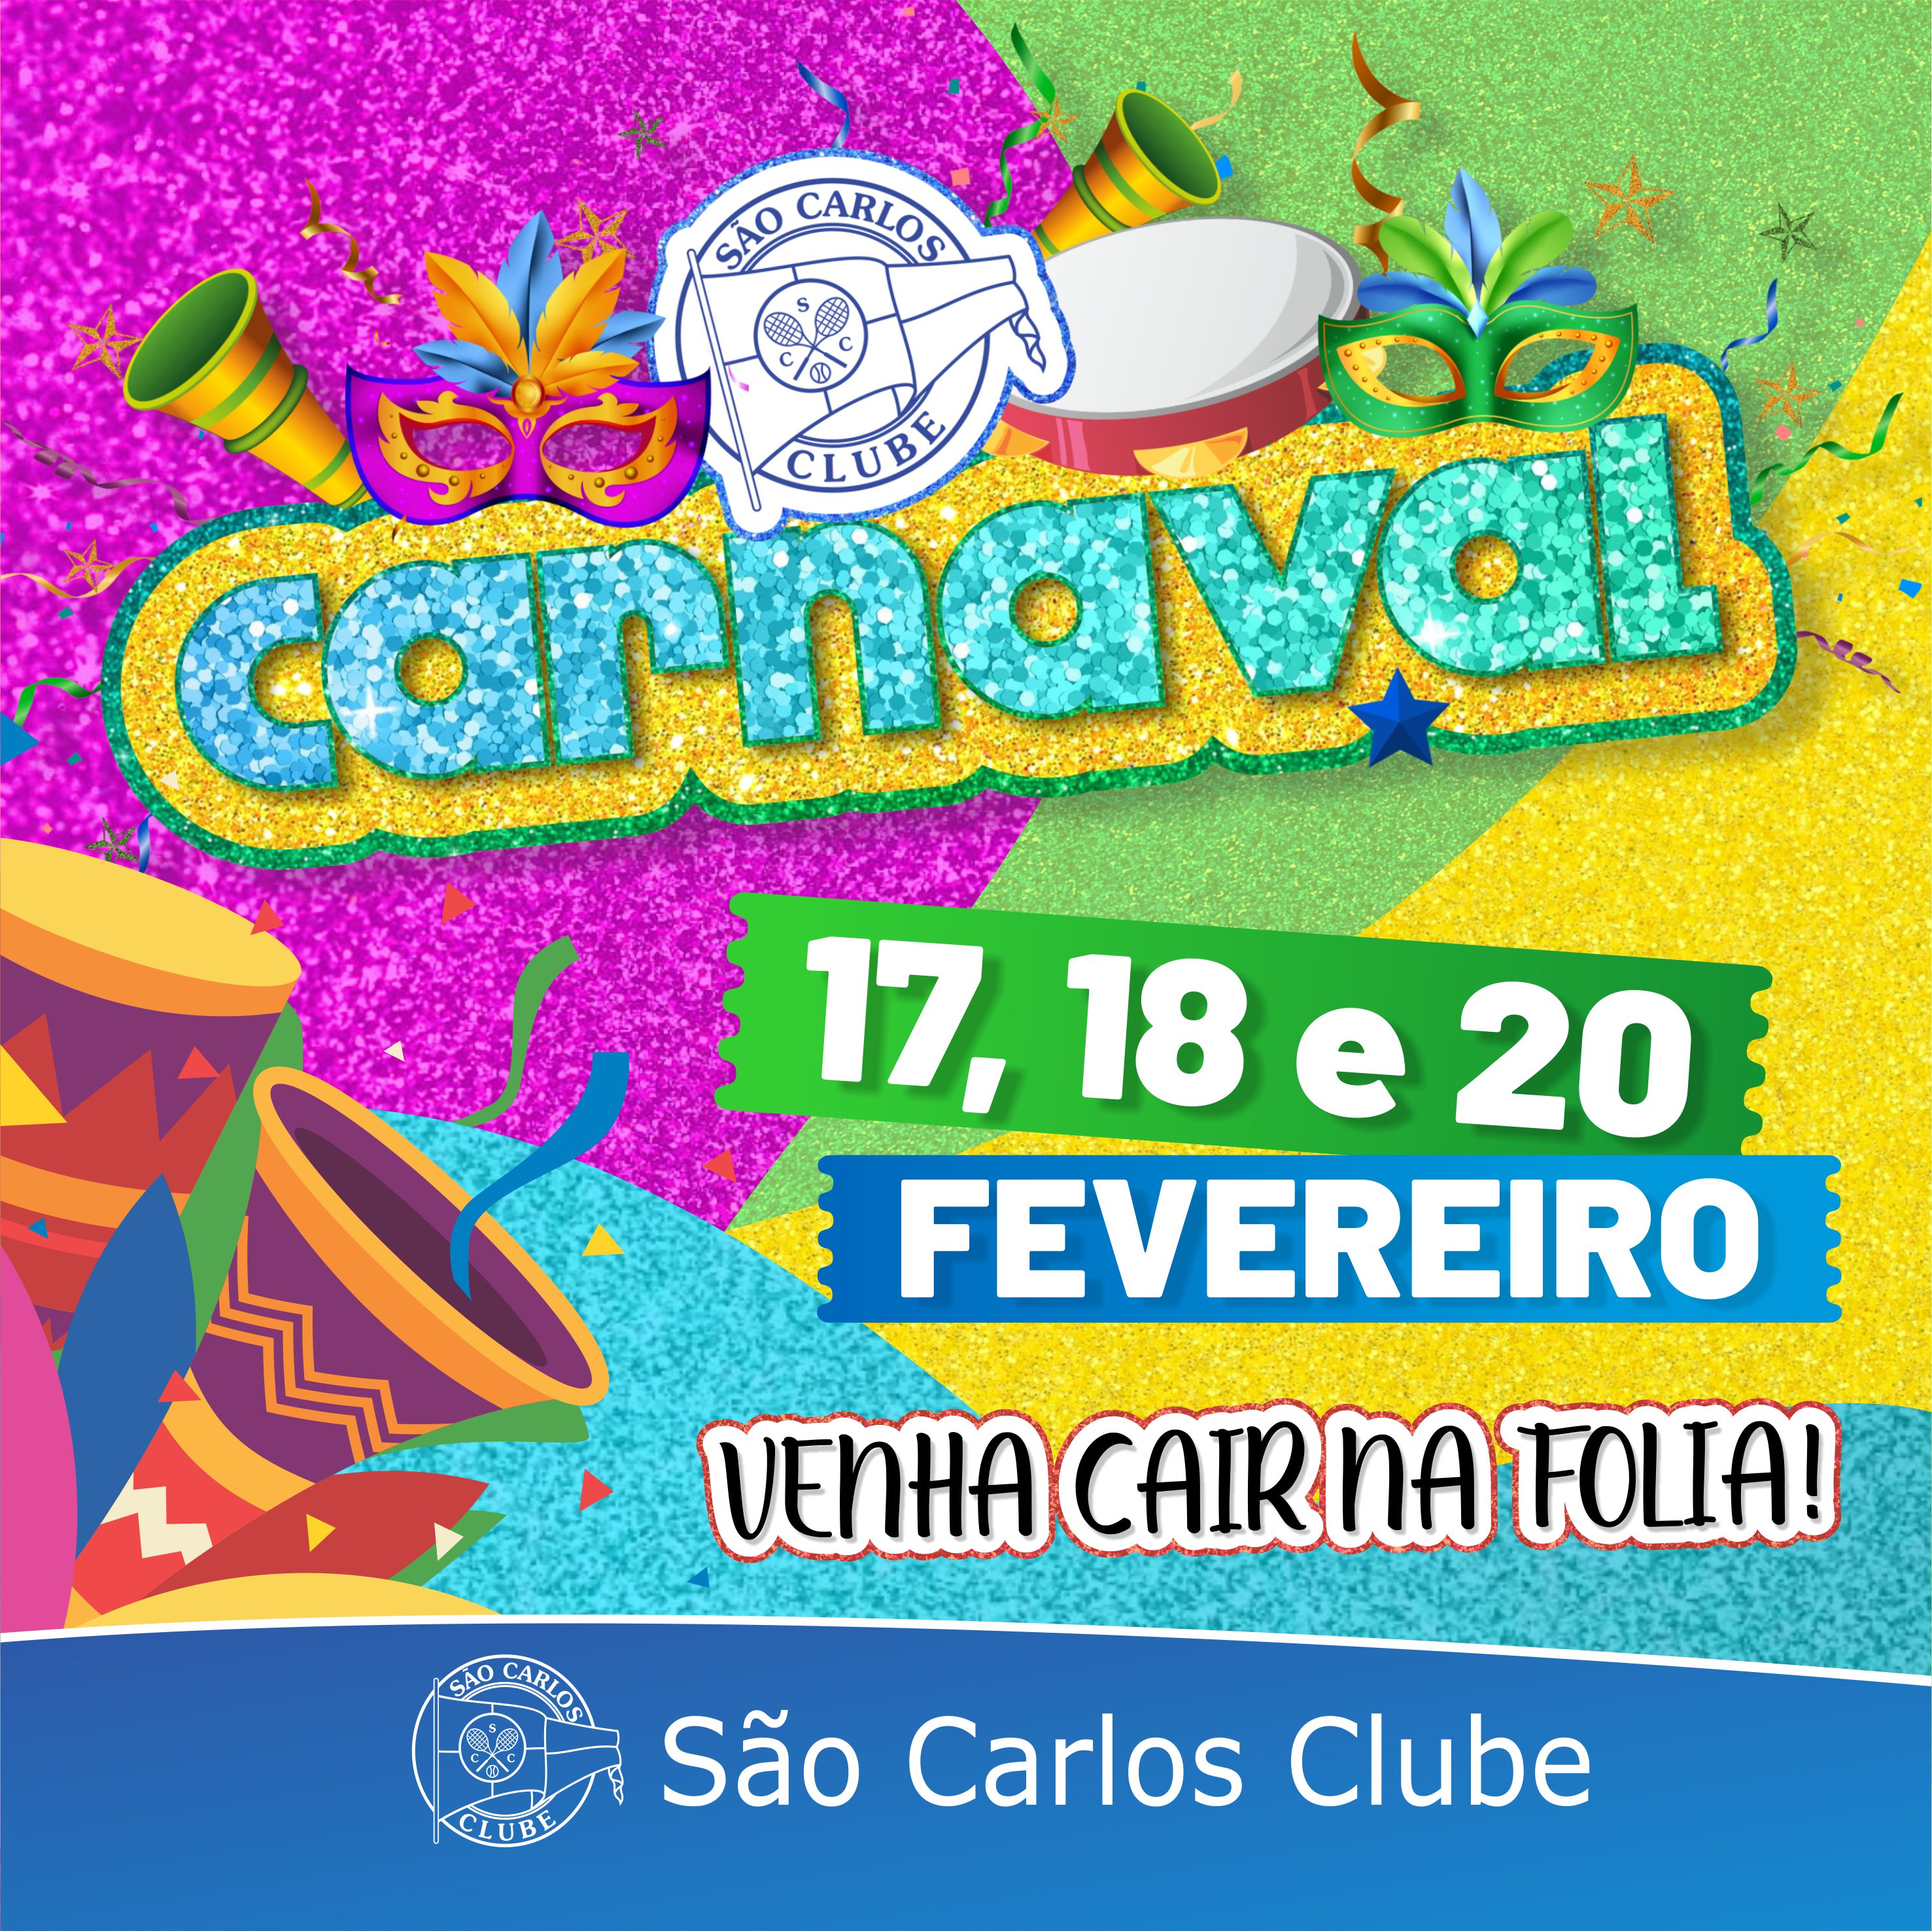 Rio tem blocos já nesta quarta: veja a lista completa até o fim do carnaval, Carnaval 2023 no Rio de Janeiro